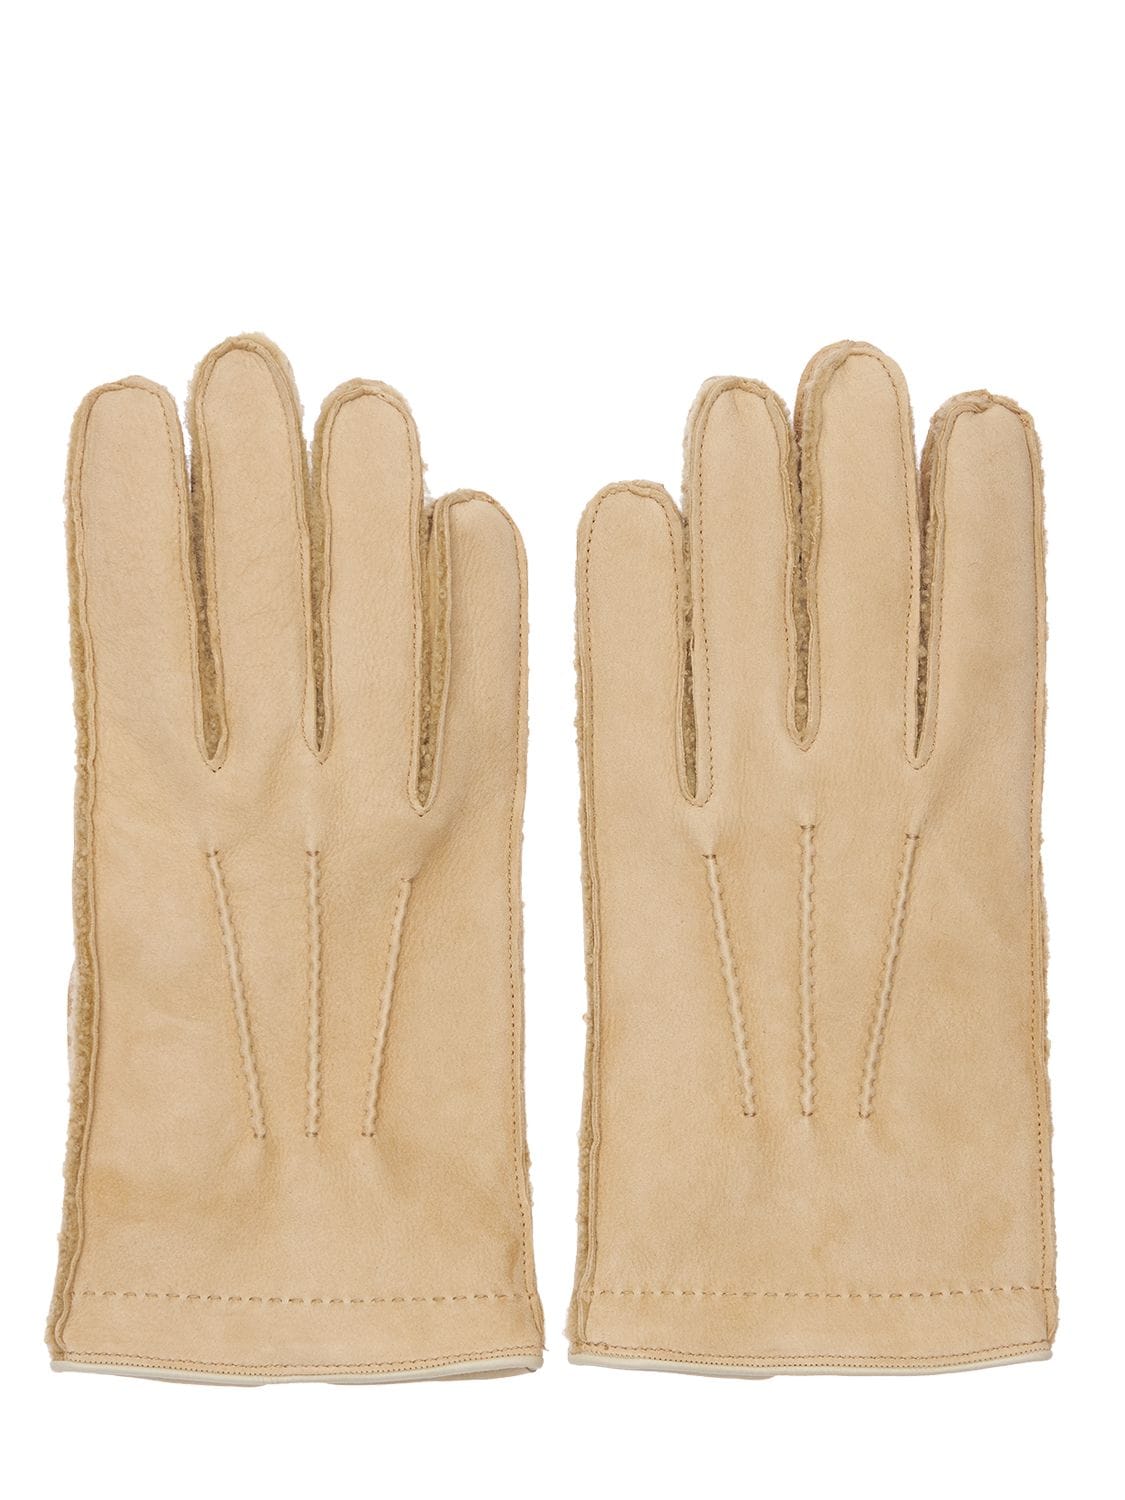 MARIO PORTOLANO Shearling Gloves